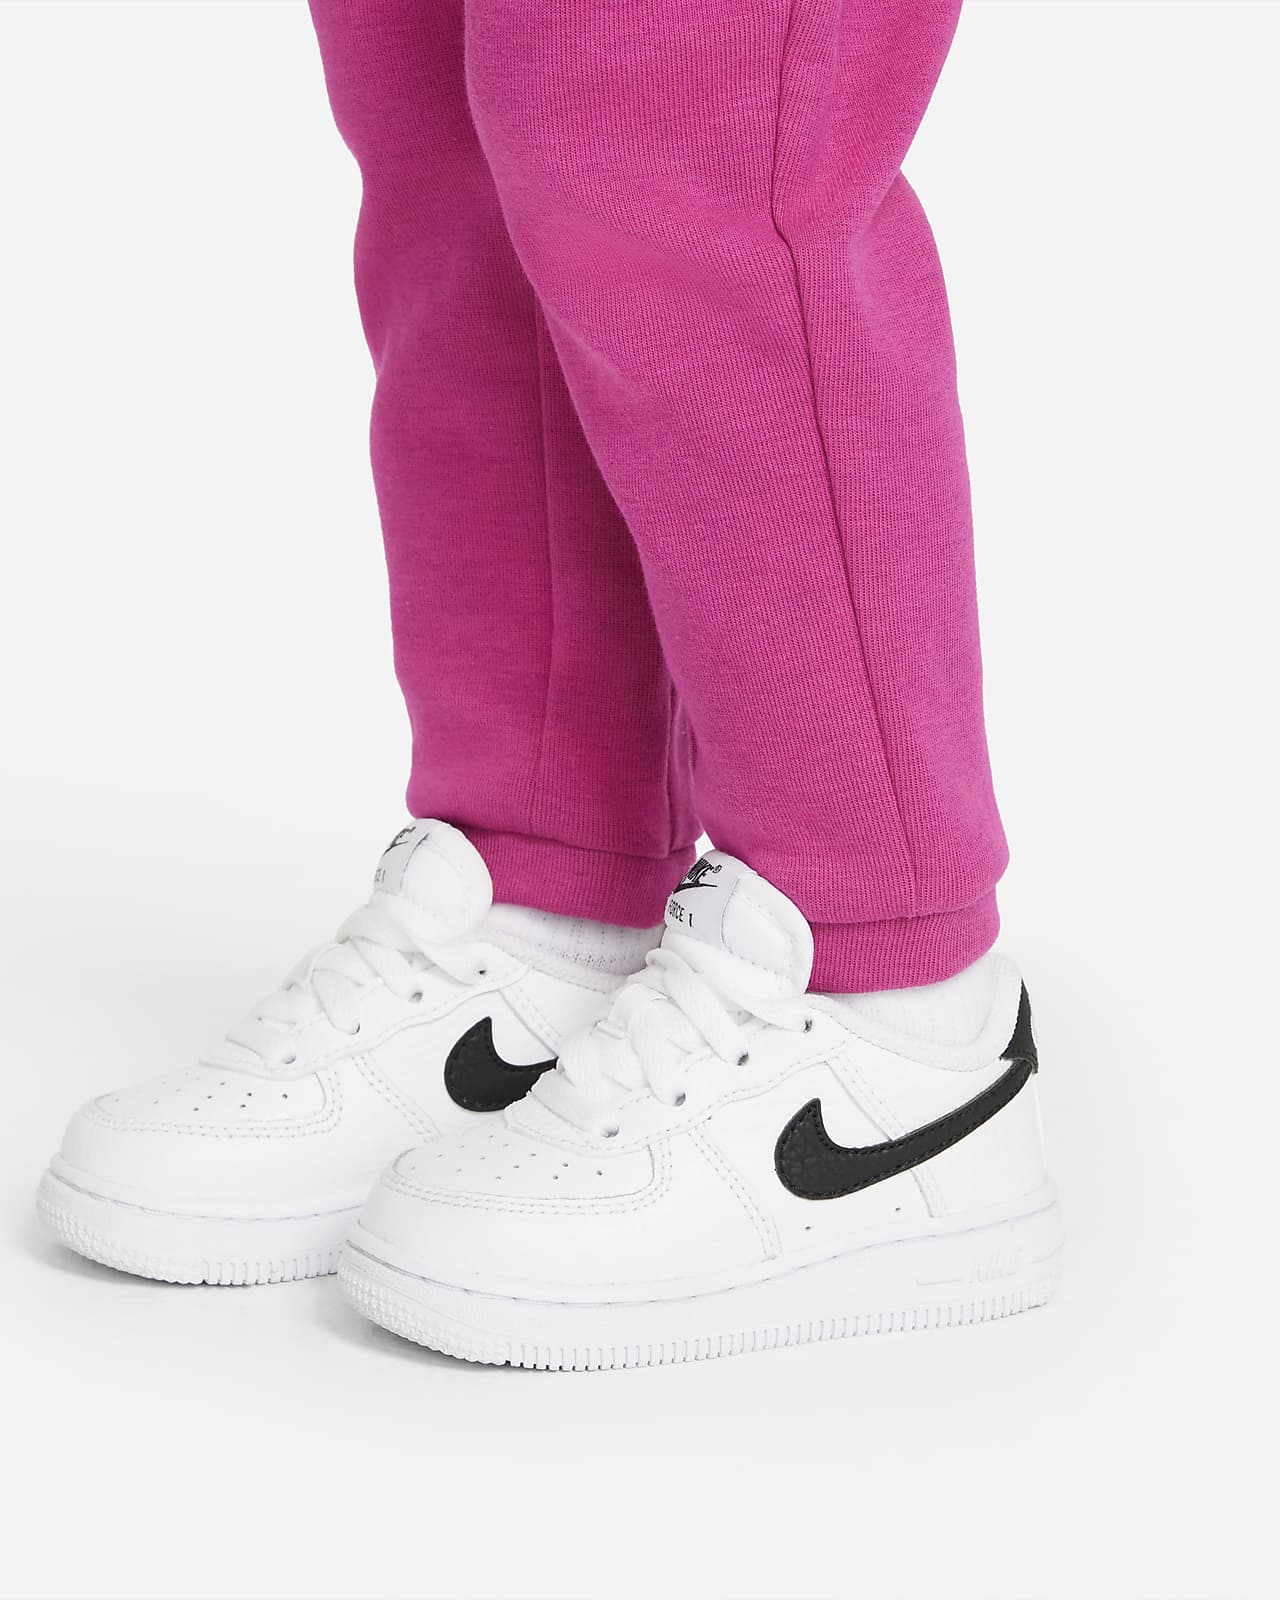 Nike Tech Fleece Baby Set - Pink – Footkorner